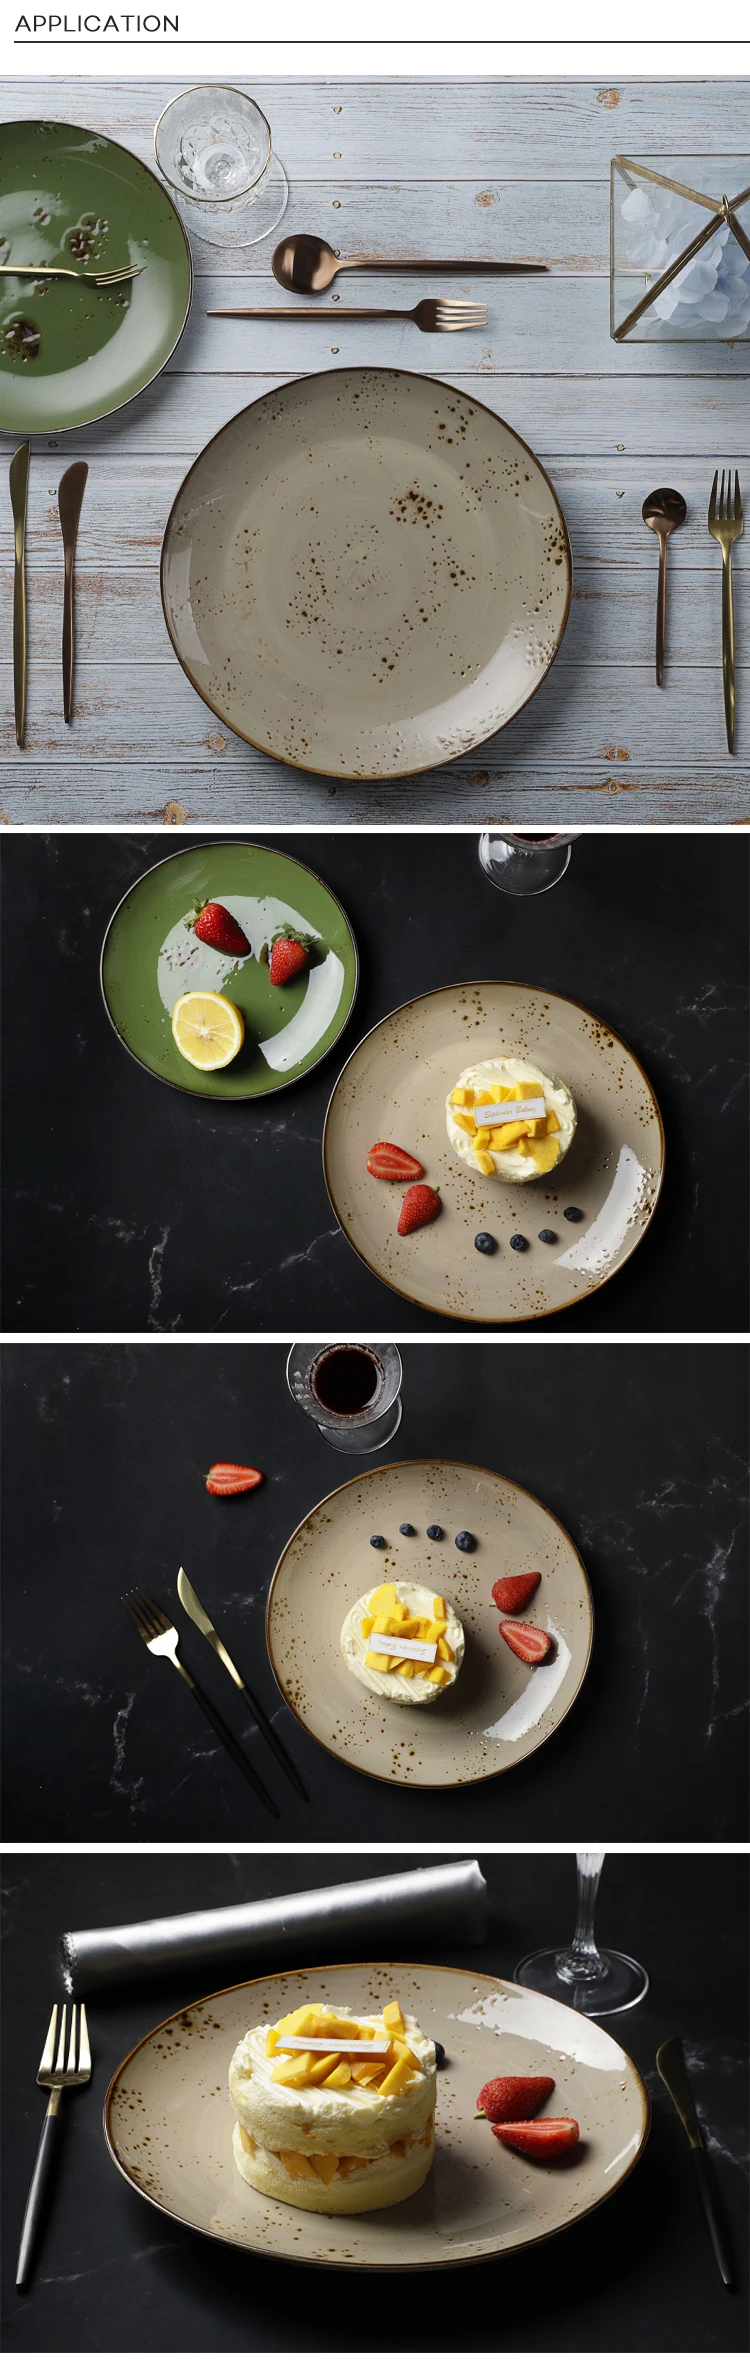 28ceramics Rustic Tableware For Restaurant Price Ceramic Dinner Plates Dishes, Ceramic Plate Restaurant~